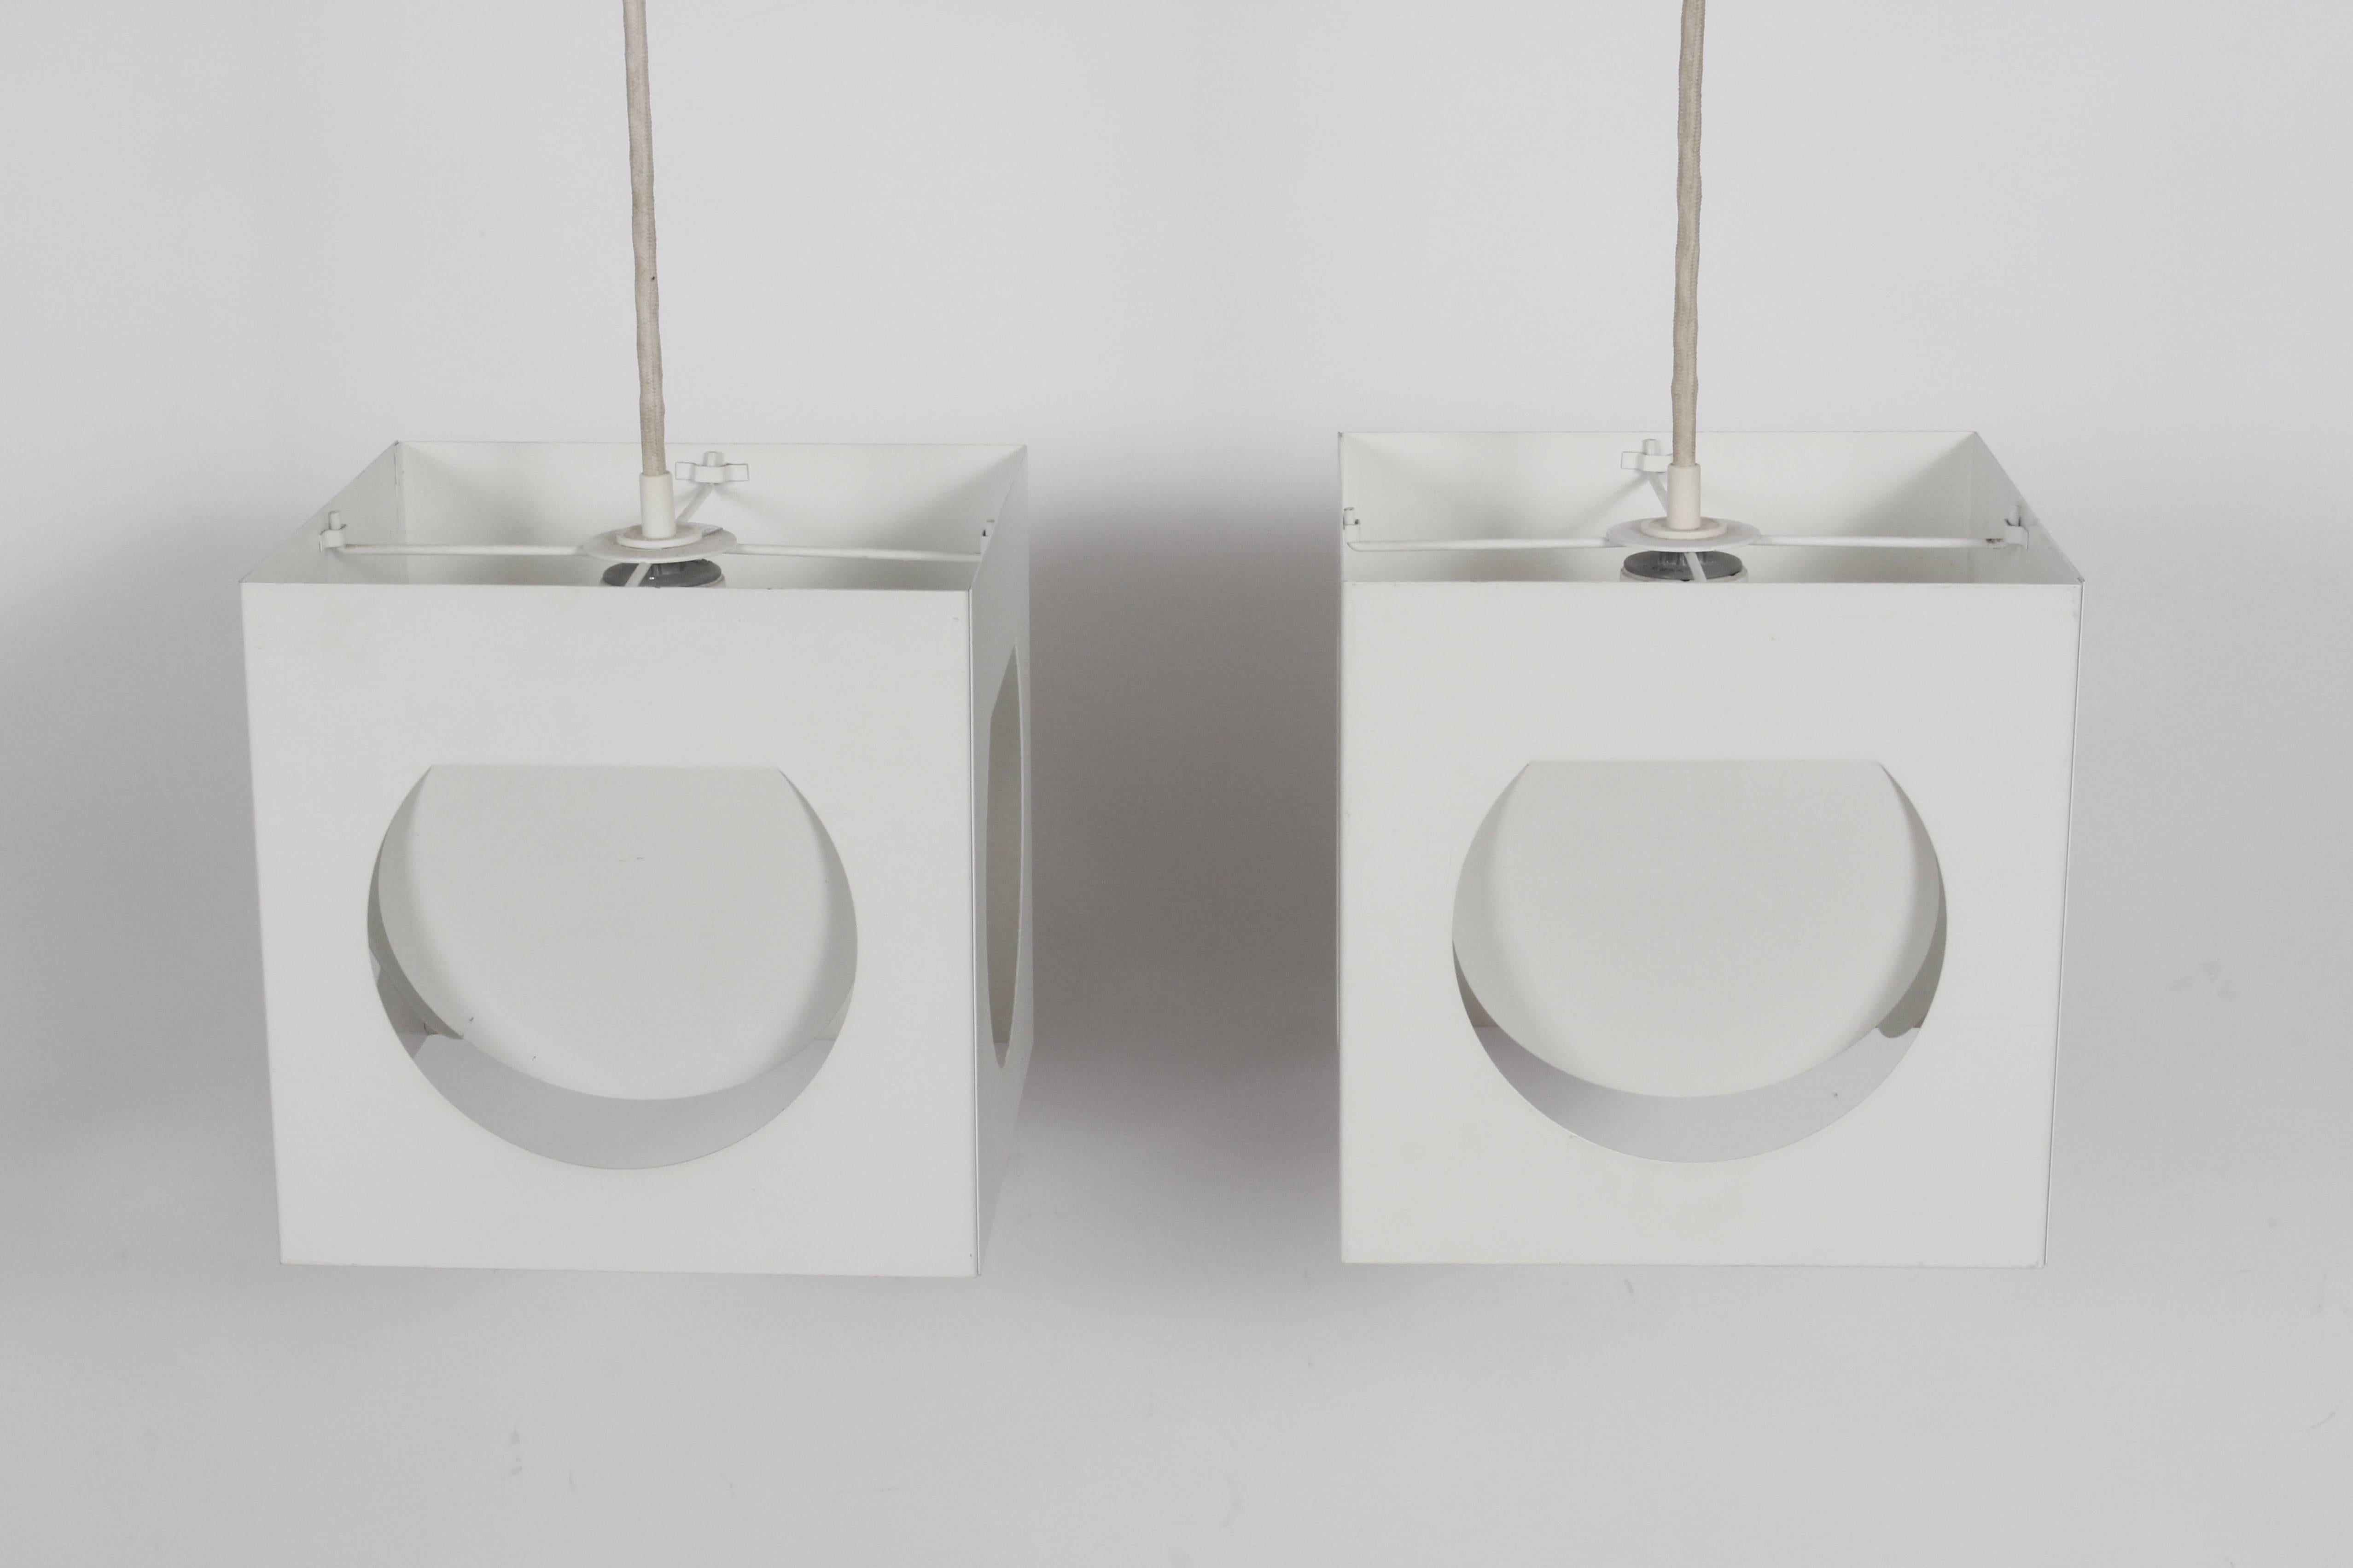 Paire de pendentifs blancs (modèle 61-193) par Shogo Suzuki pour Orno Stockmann. 1960's. Des cubes en métal plié, enrobés de blanc, avec des découpes arrondies, un cordon blanc enrobé d'origine et une lumière elliptique. Architectural. Minimaliste.